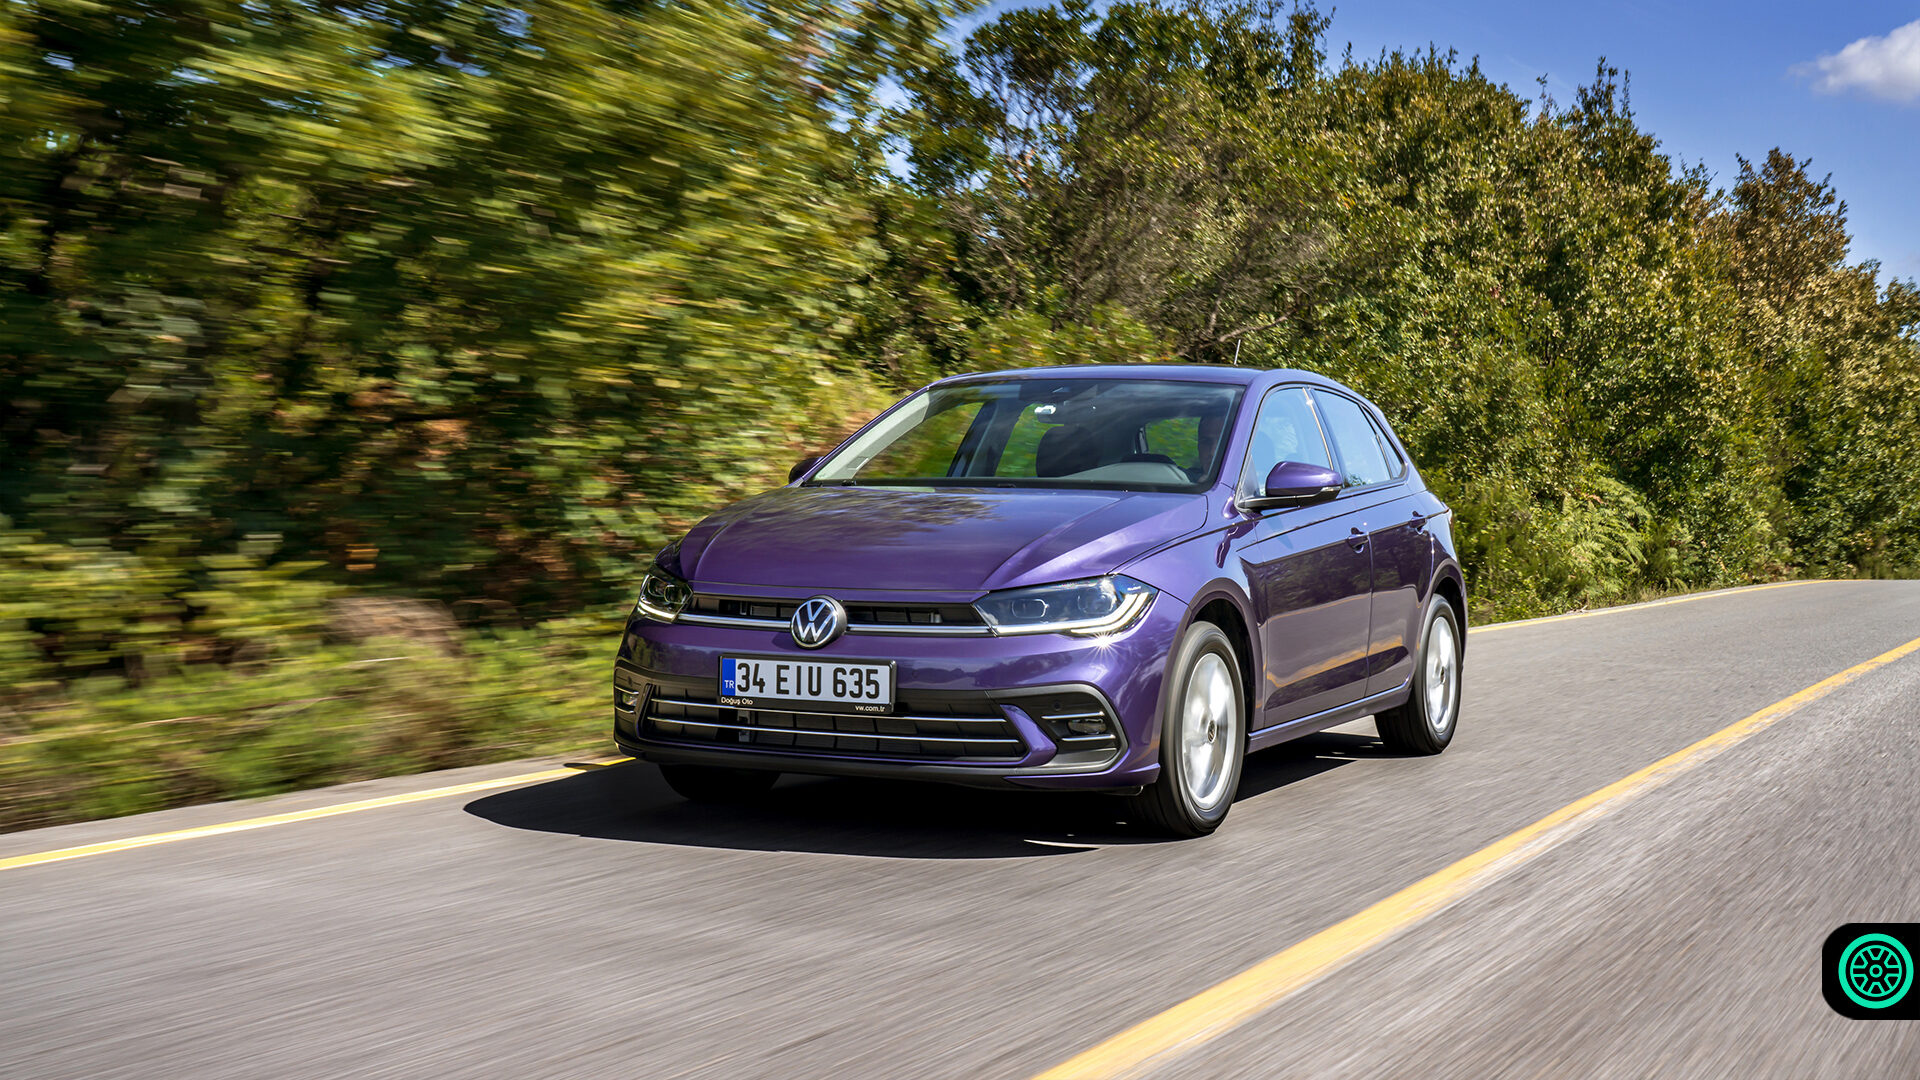 2021 Volkswagen Polo, 24 Eylül tarihinde satışa sunuluyor! 1